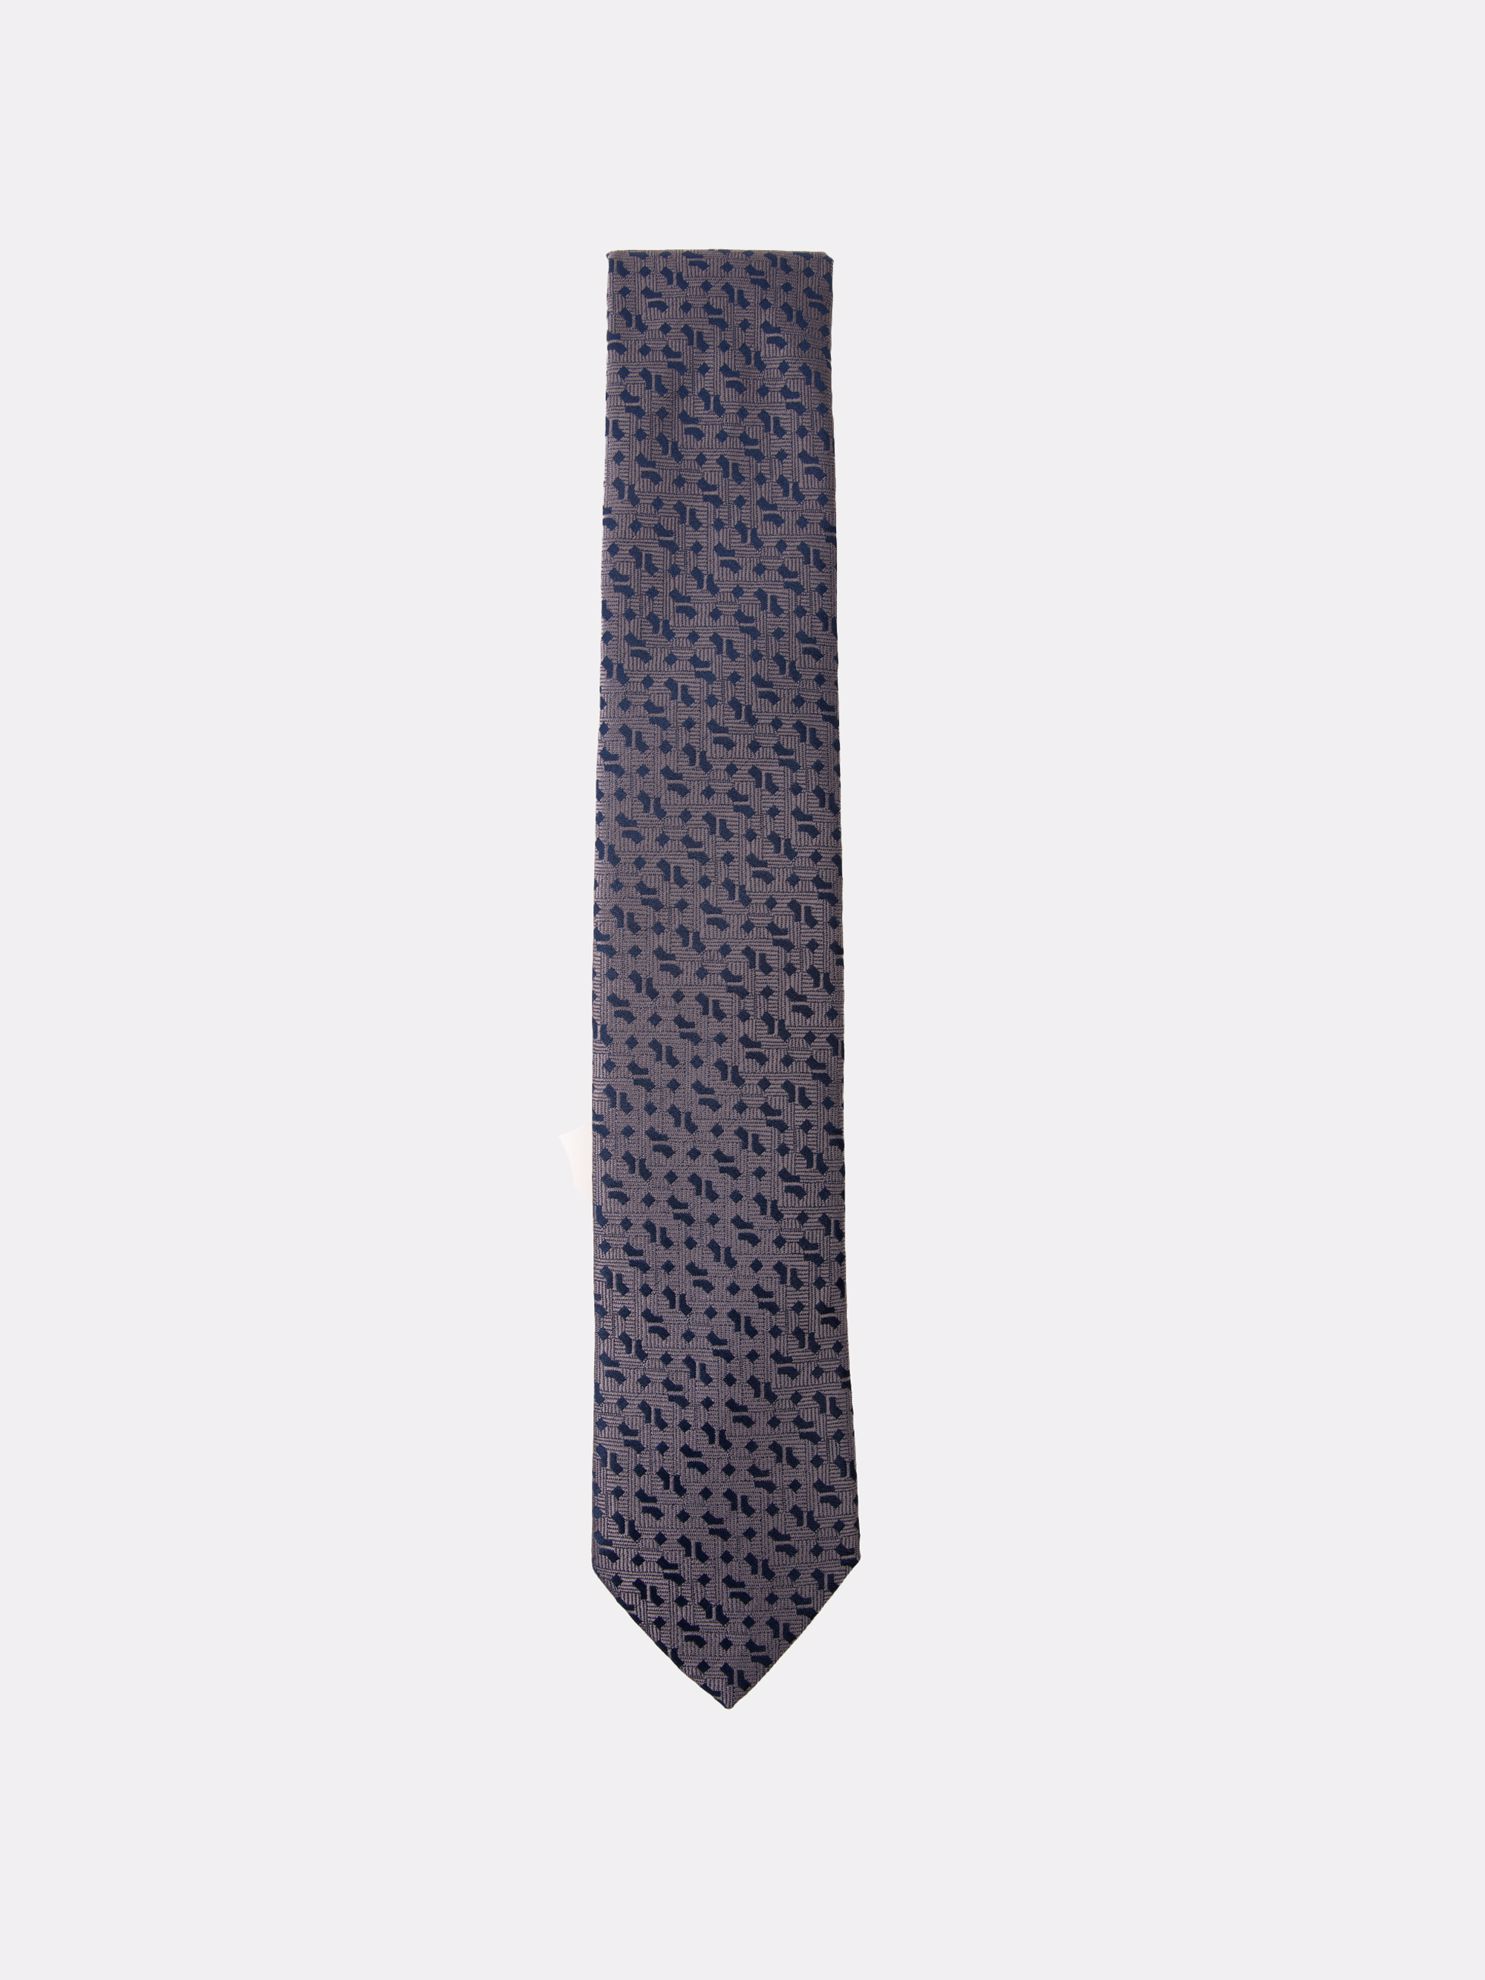 Karaca Erkek Kravat-Gri. ürün görseli